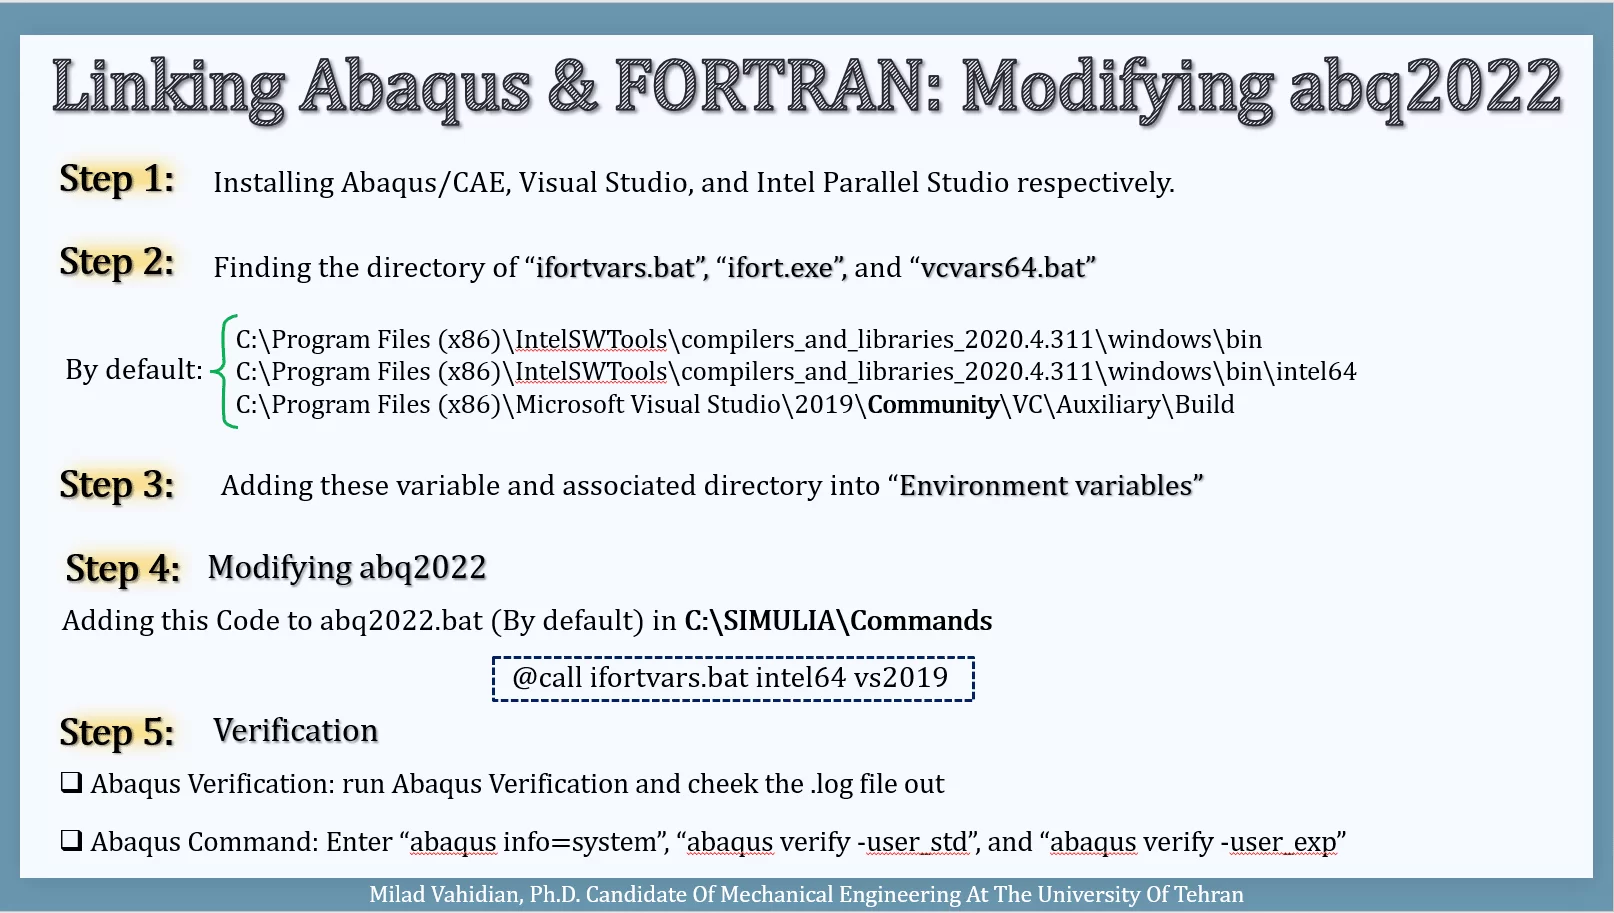 Linking Abaqus & FORTRAN: Modifying abq2022